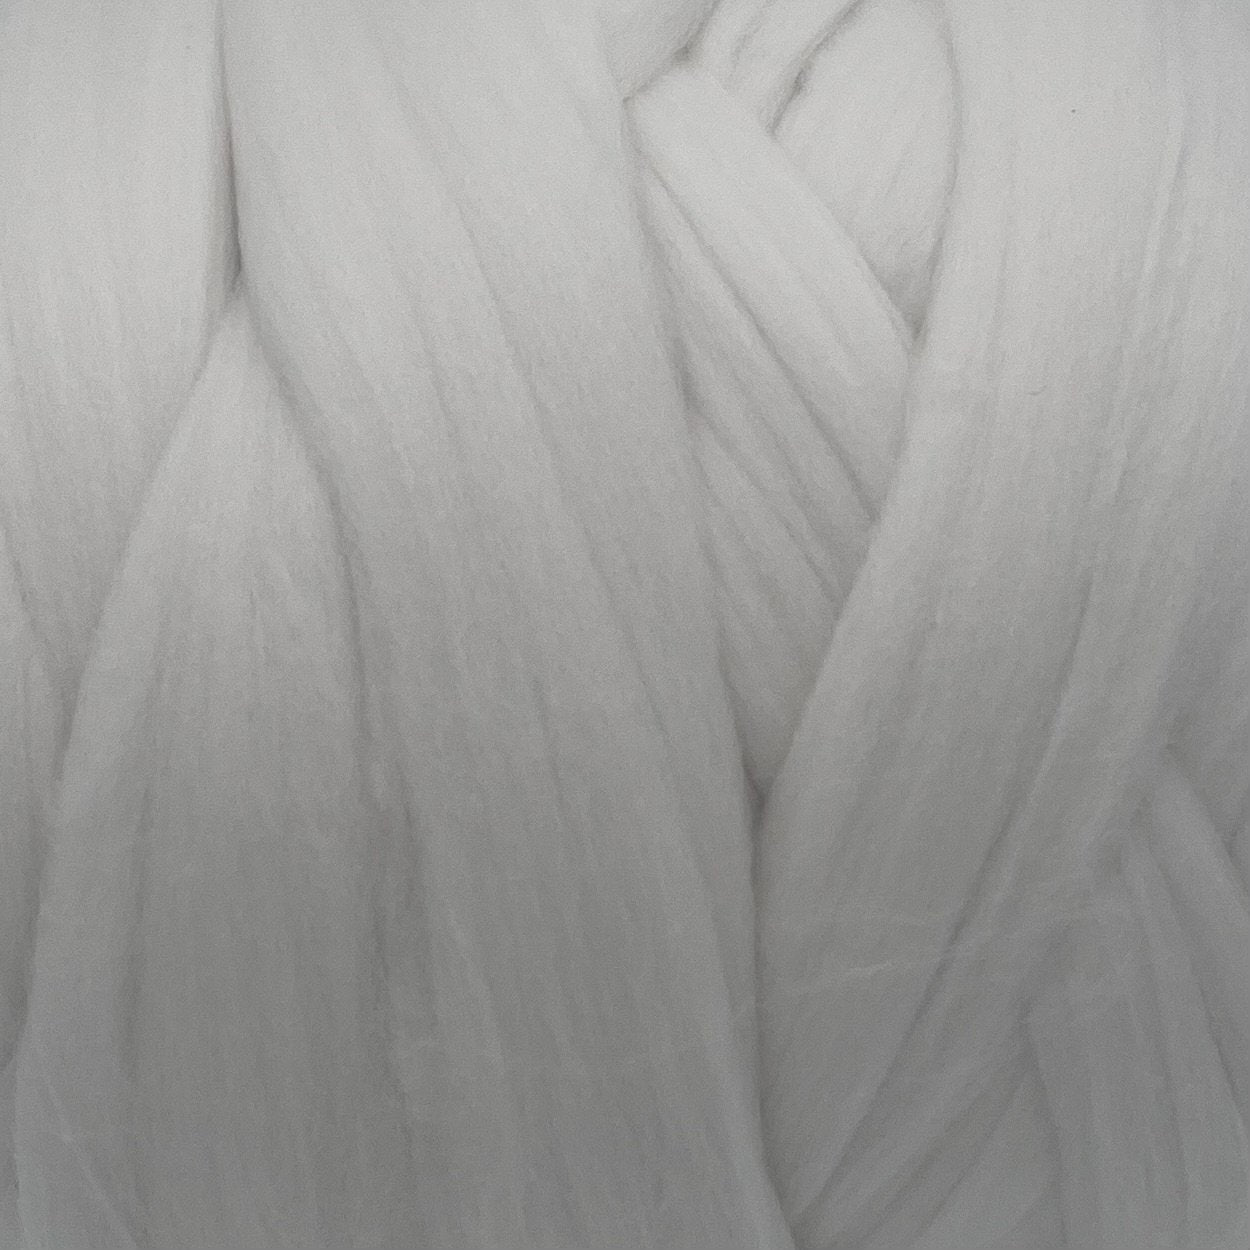 Merino combed white wool